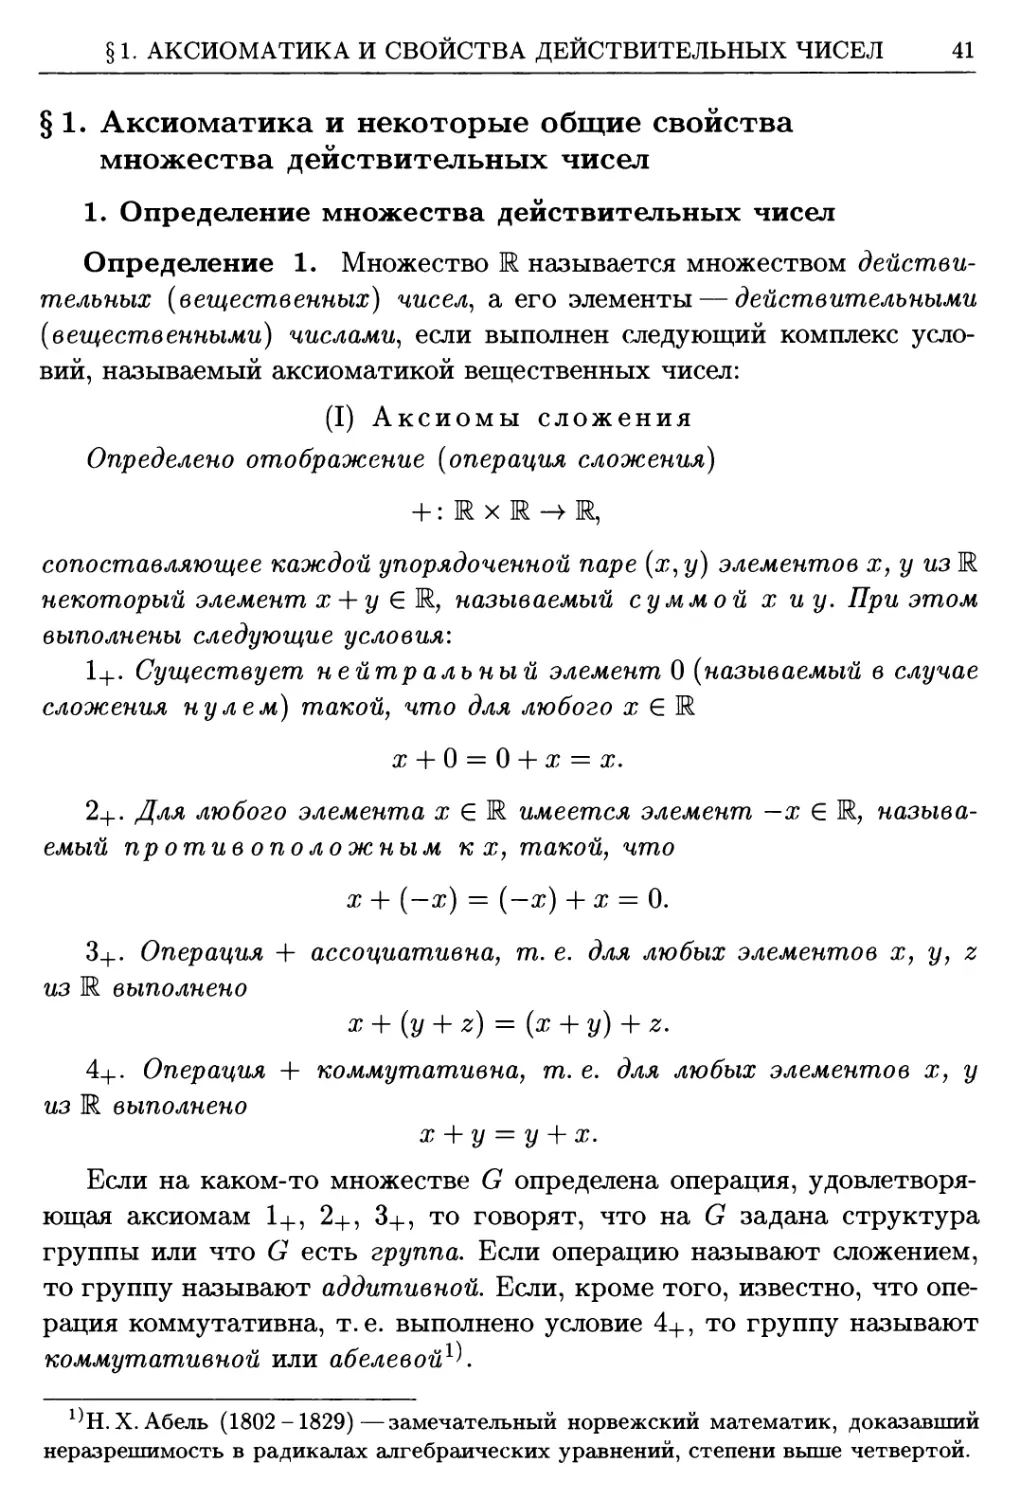 §1. Аксиоматика и некоторые общие свойства множества действительных чисел